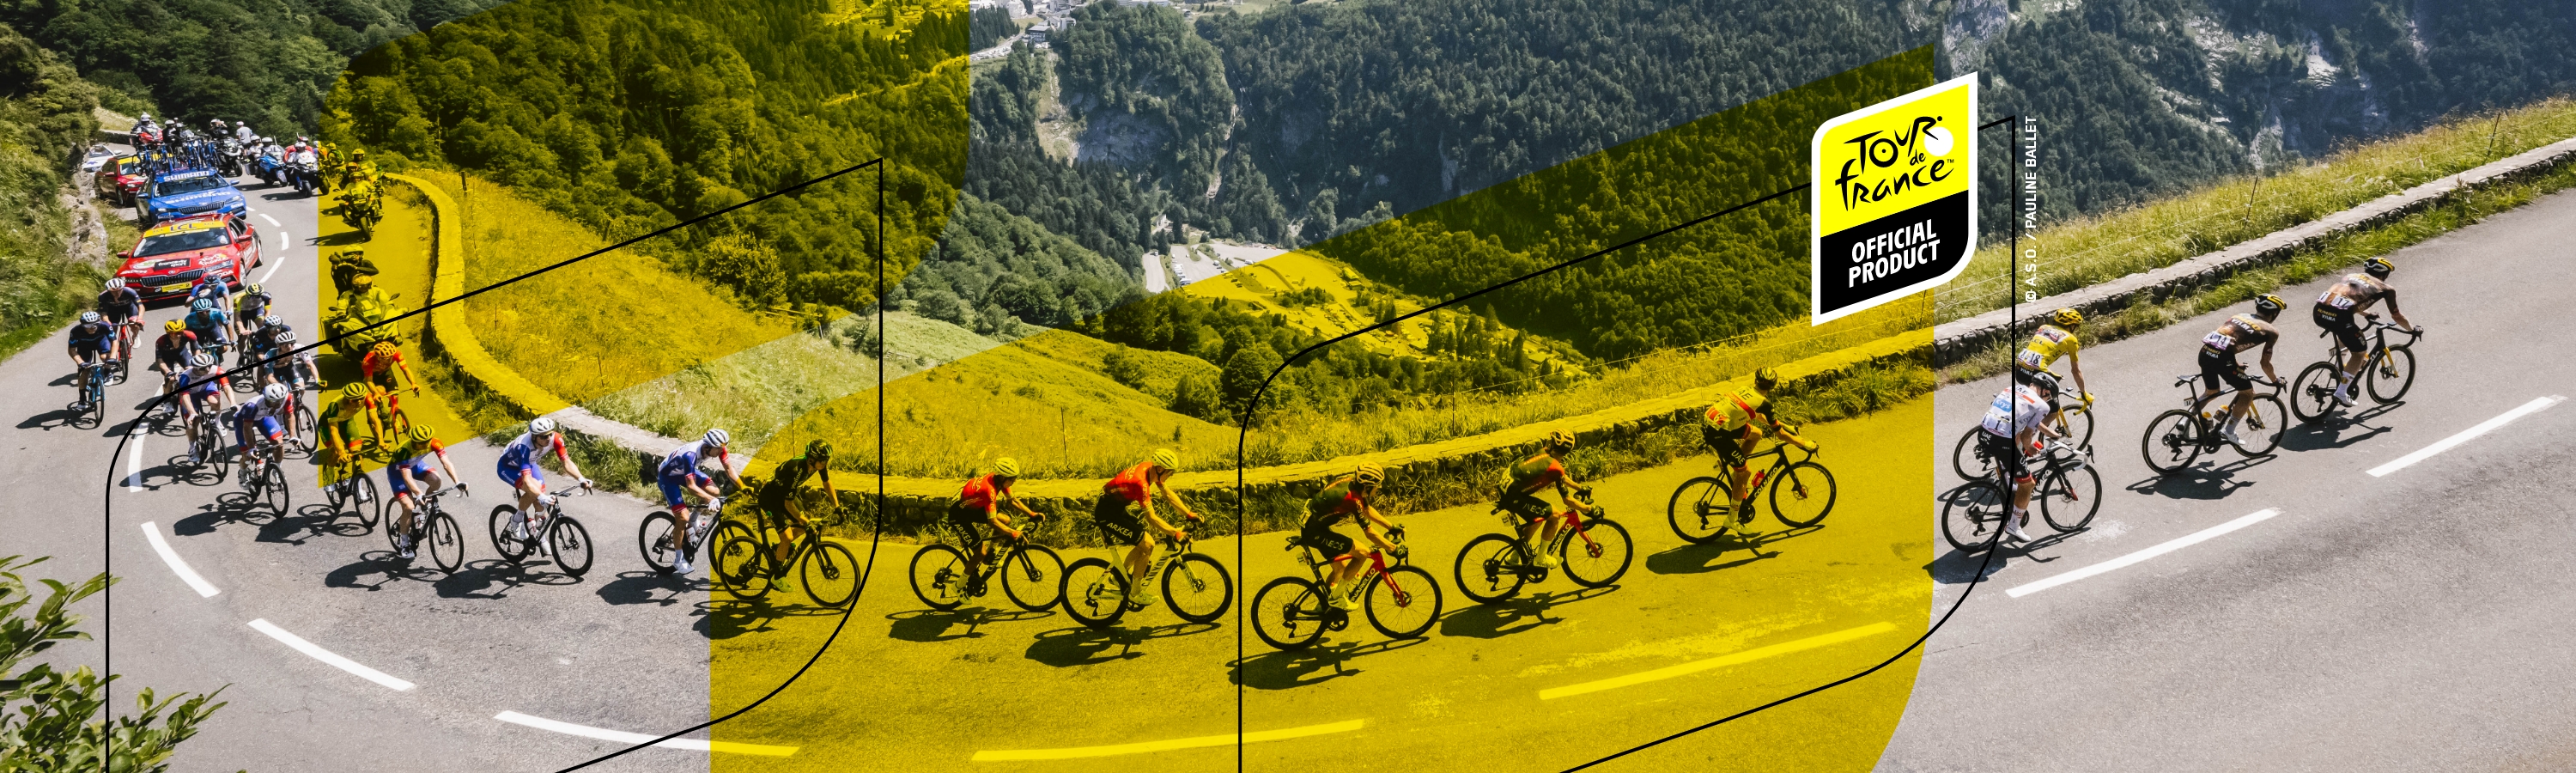 Die Tour de France™ eines der größten und bekanntesten Radrennen der Welt!